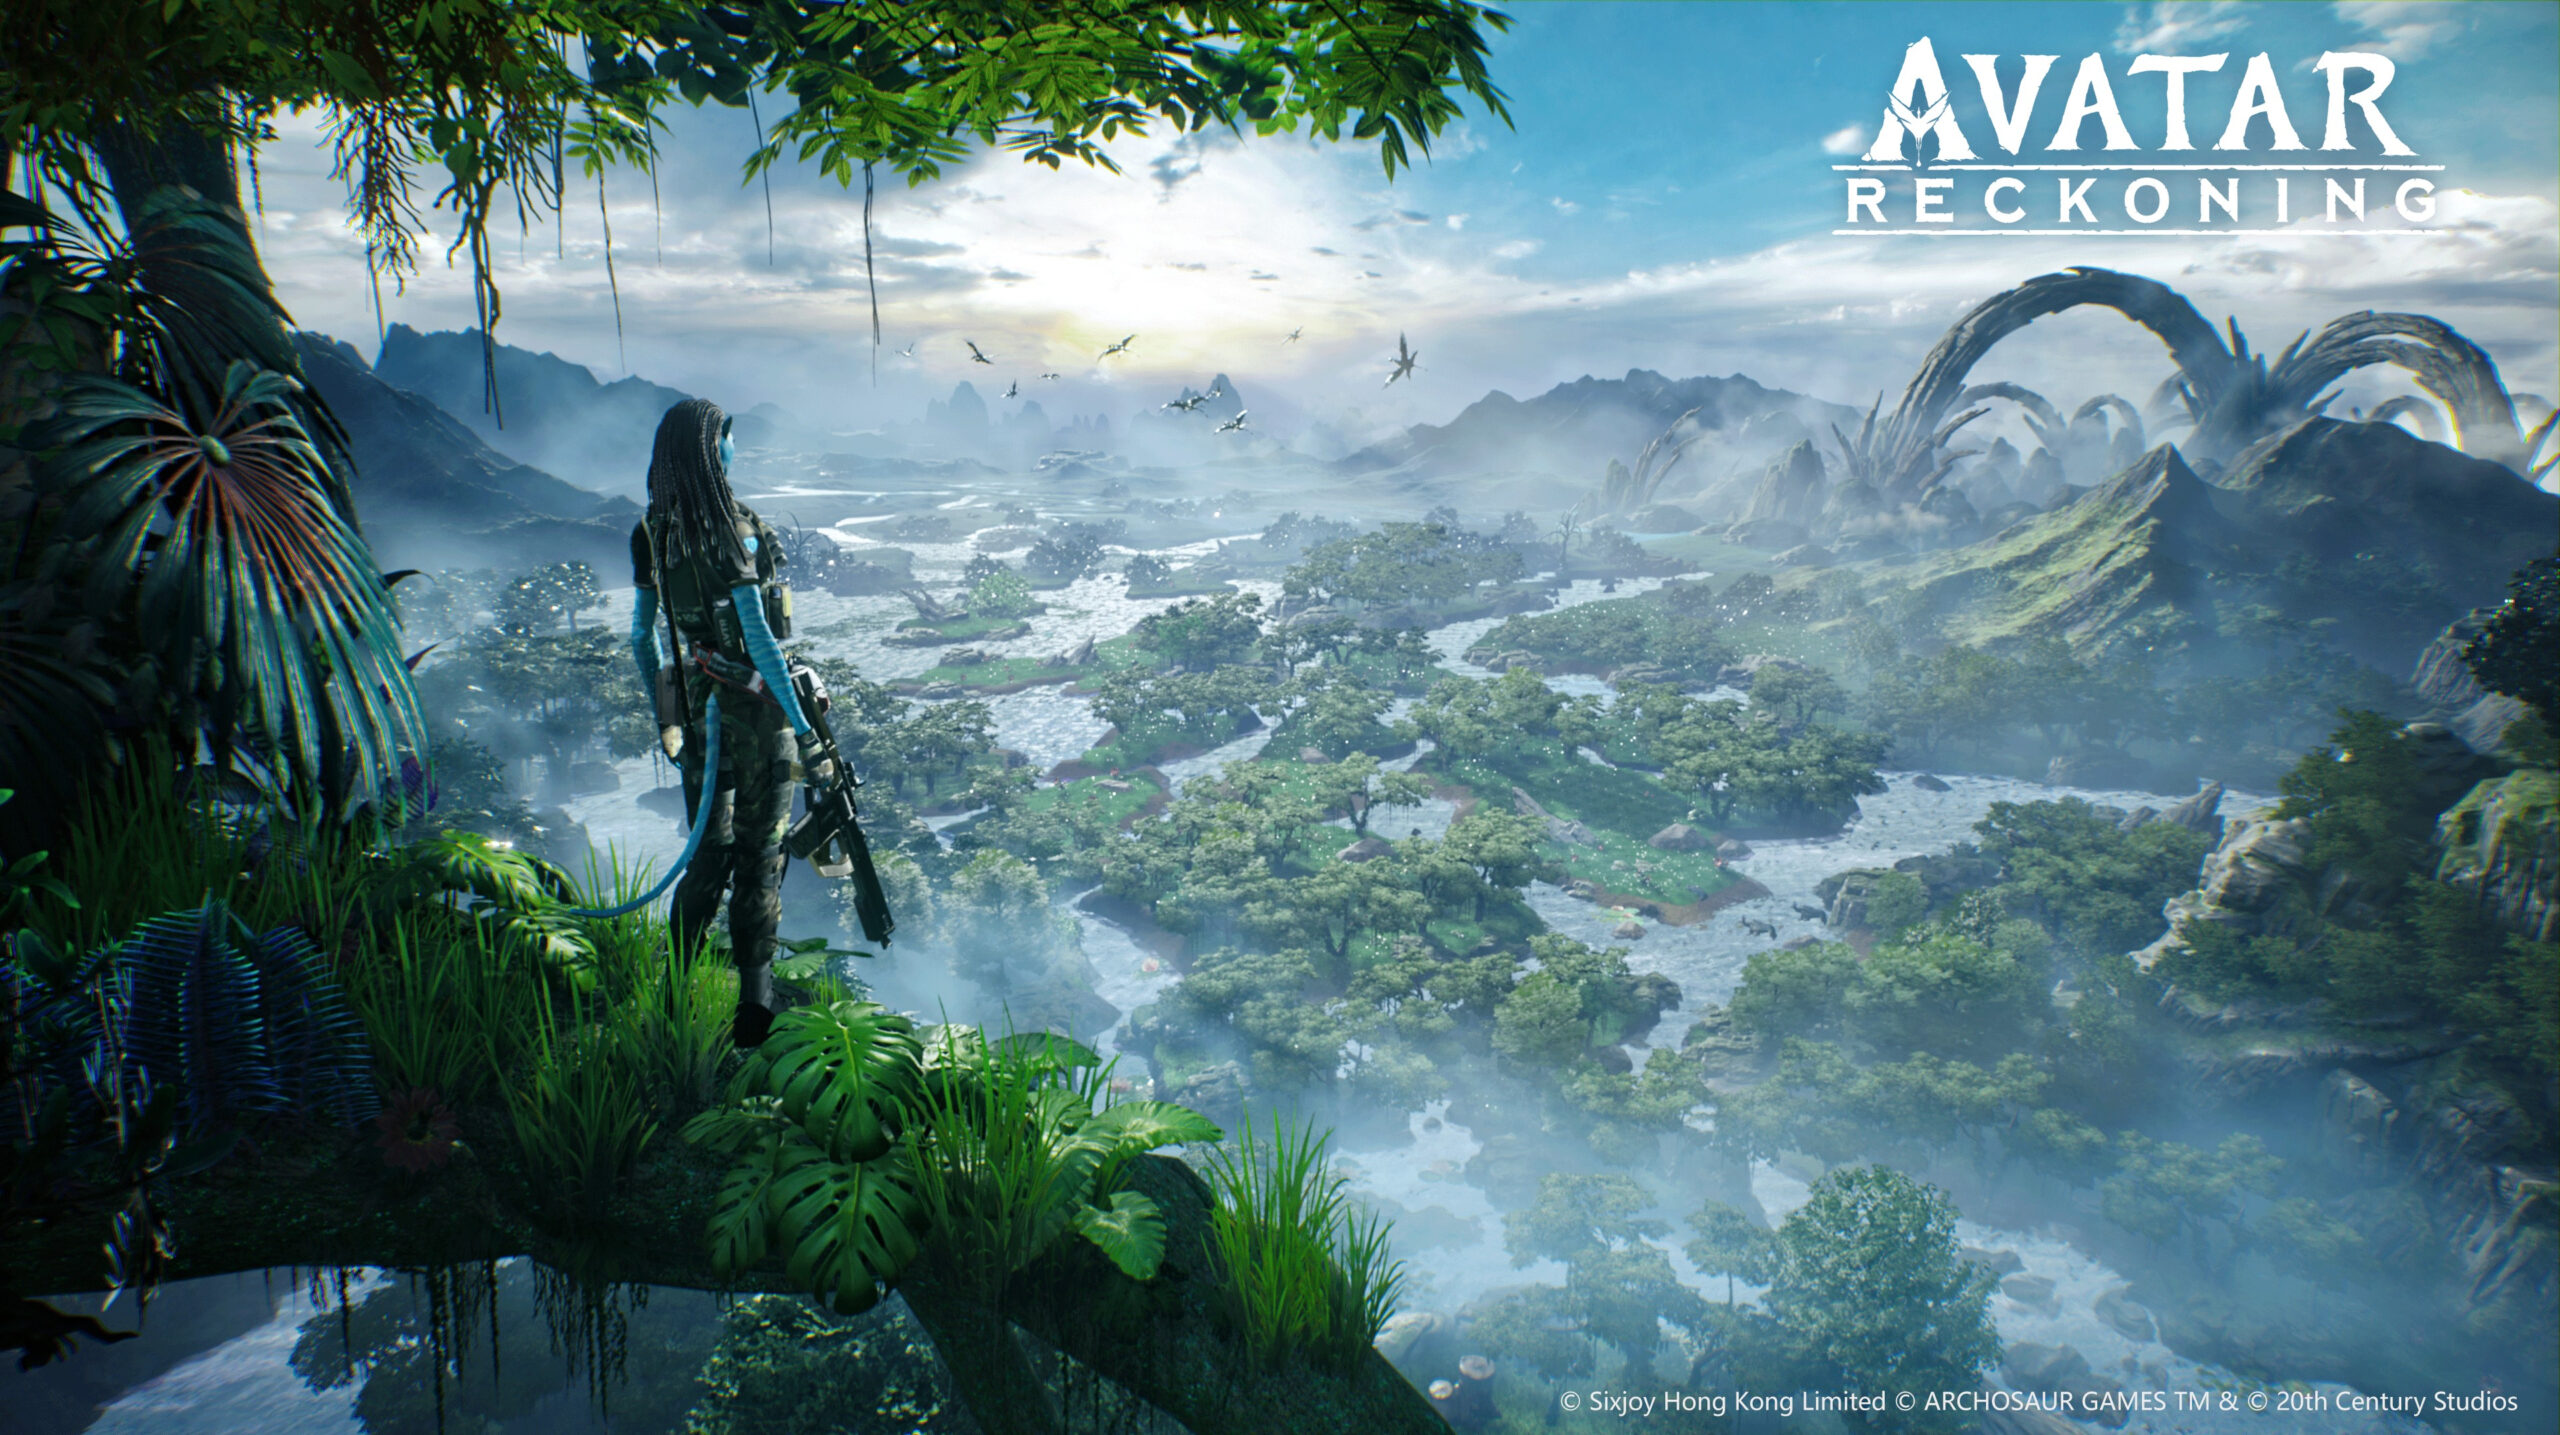 Avatar MMORPG von Disney und Tencent angekündigt titel